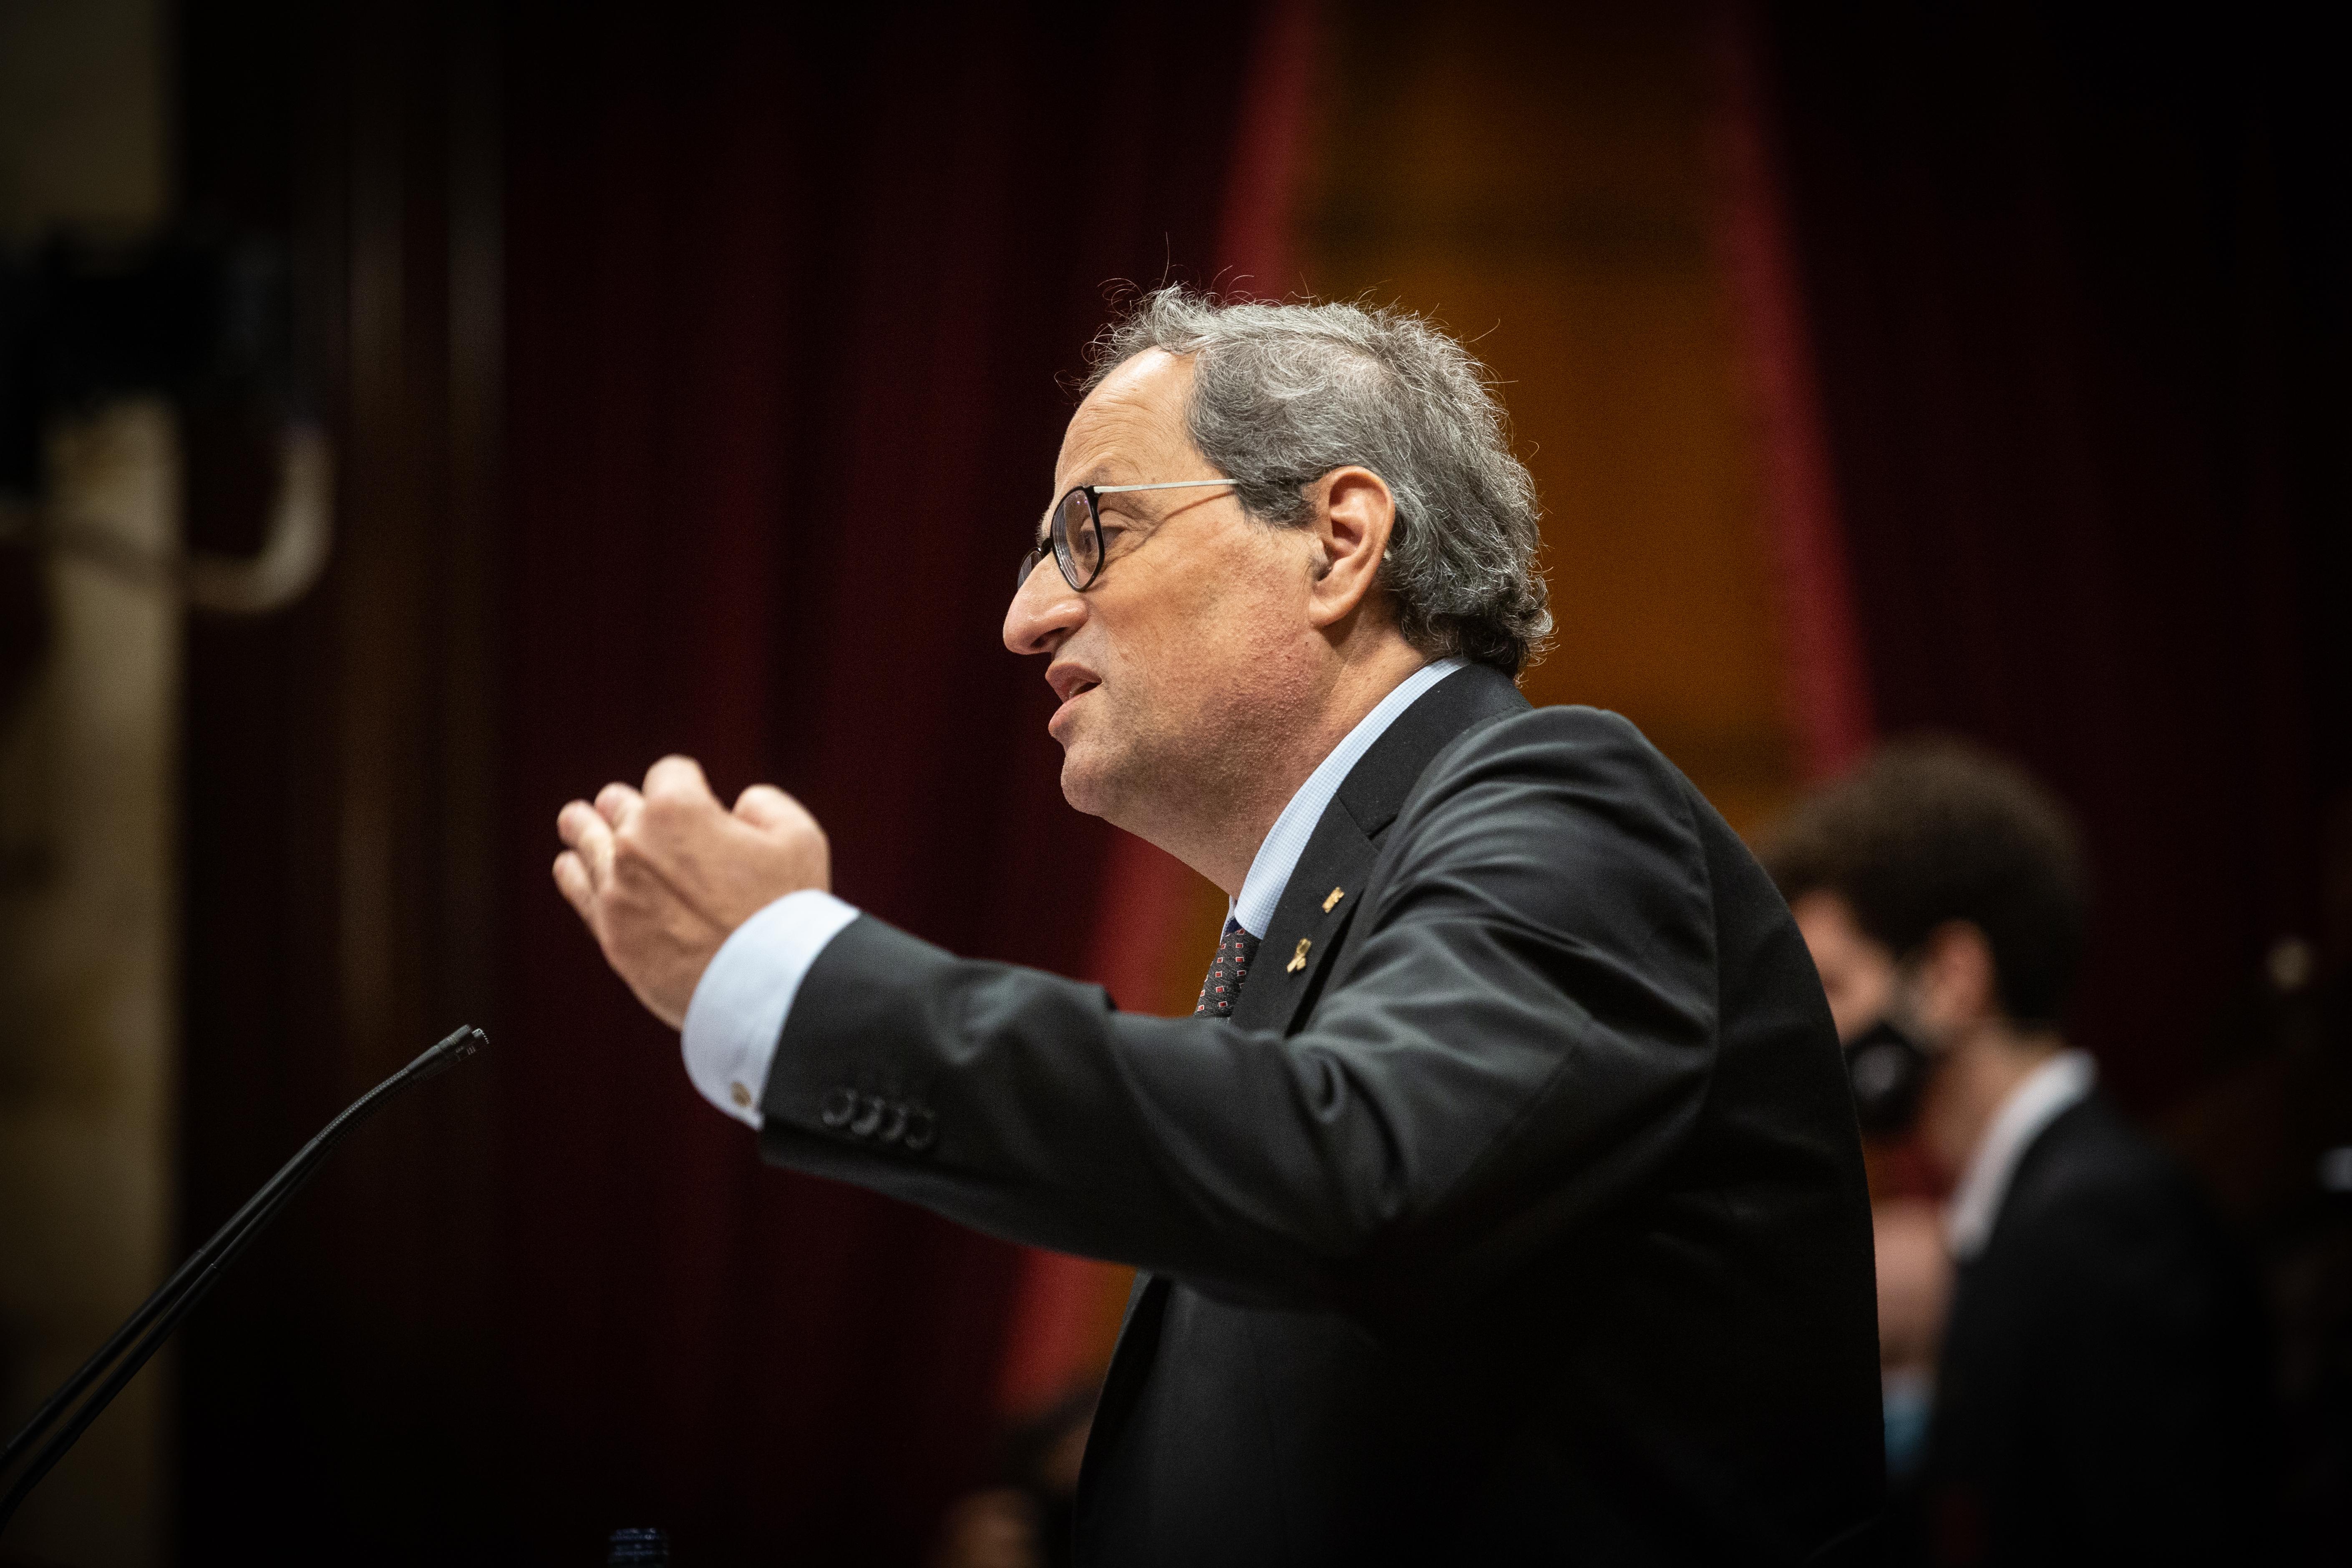 El ya expresidente de la Generalitat Quim Torra interviene durante una sesión plenaria monográfica en el Parlament sobre su inhabilitación, en Barcelona, Catalunya (España), a 30 de septiembre de 2020